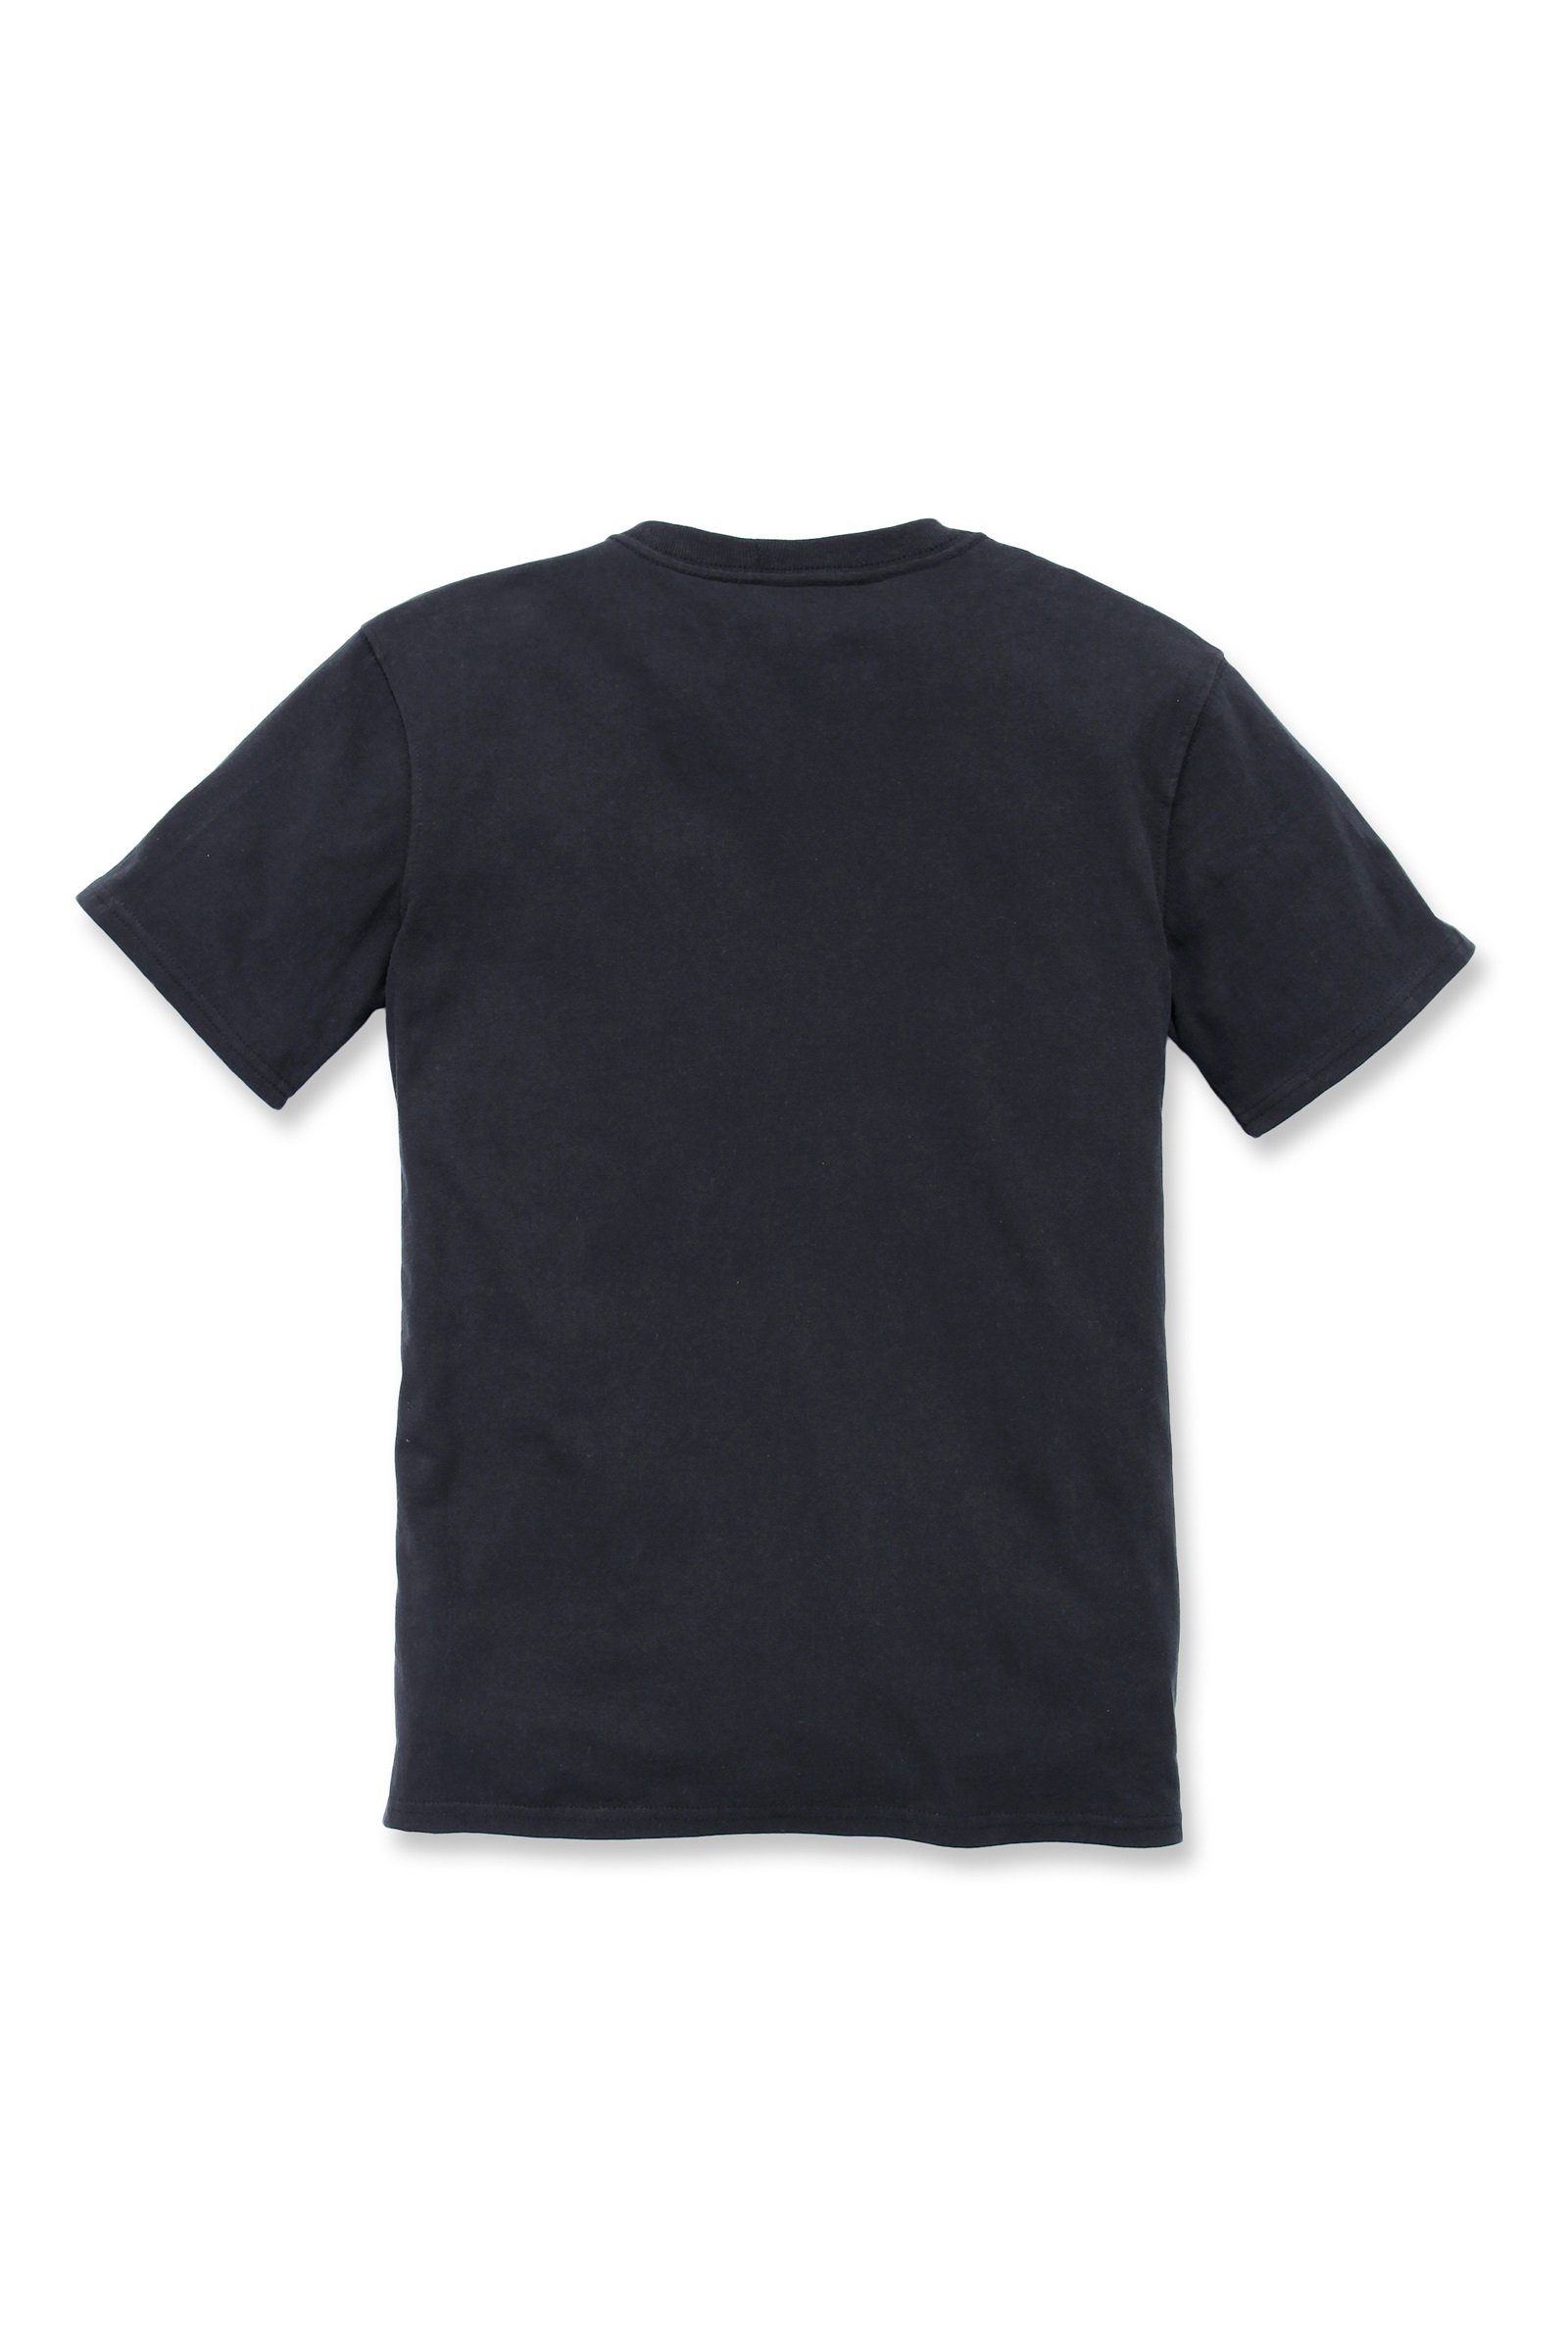 Fit Pocket Damen Carhartt T-Shirt Adult black Heavyweight Carhartt T-Shirt Loose Short-Sleeve